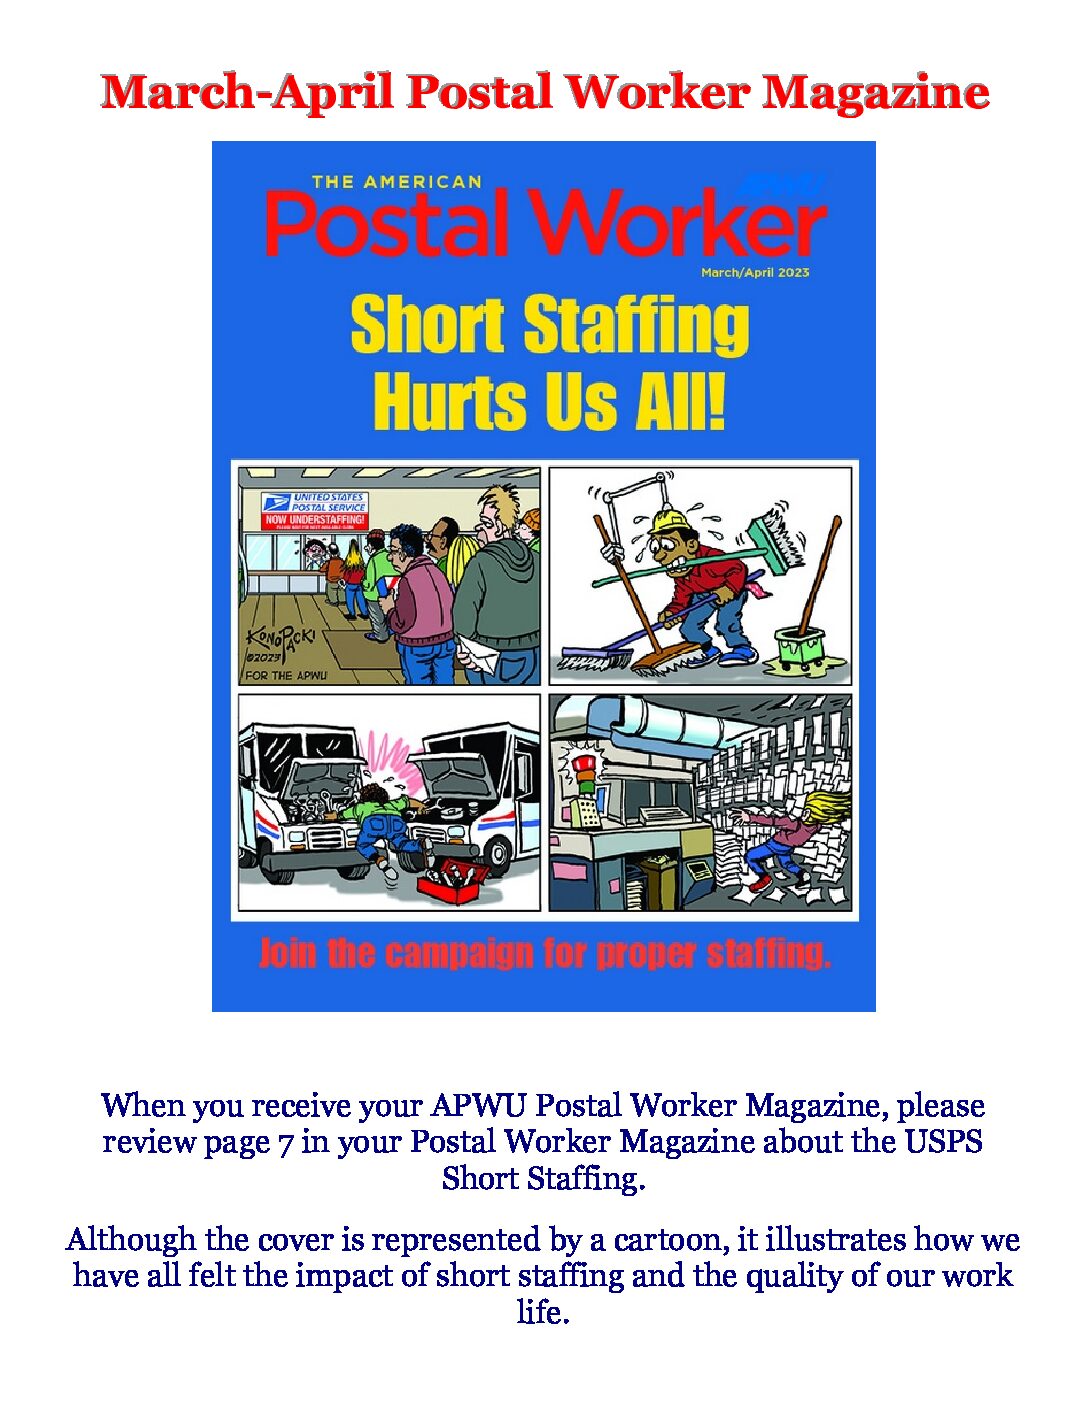 March-April APWU Postal Worker Magazine - 